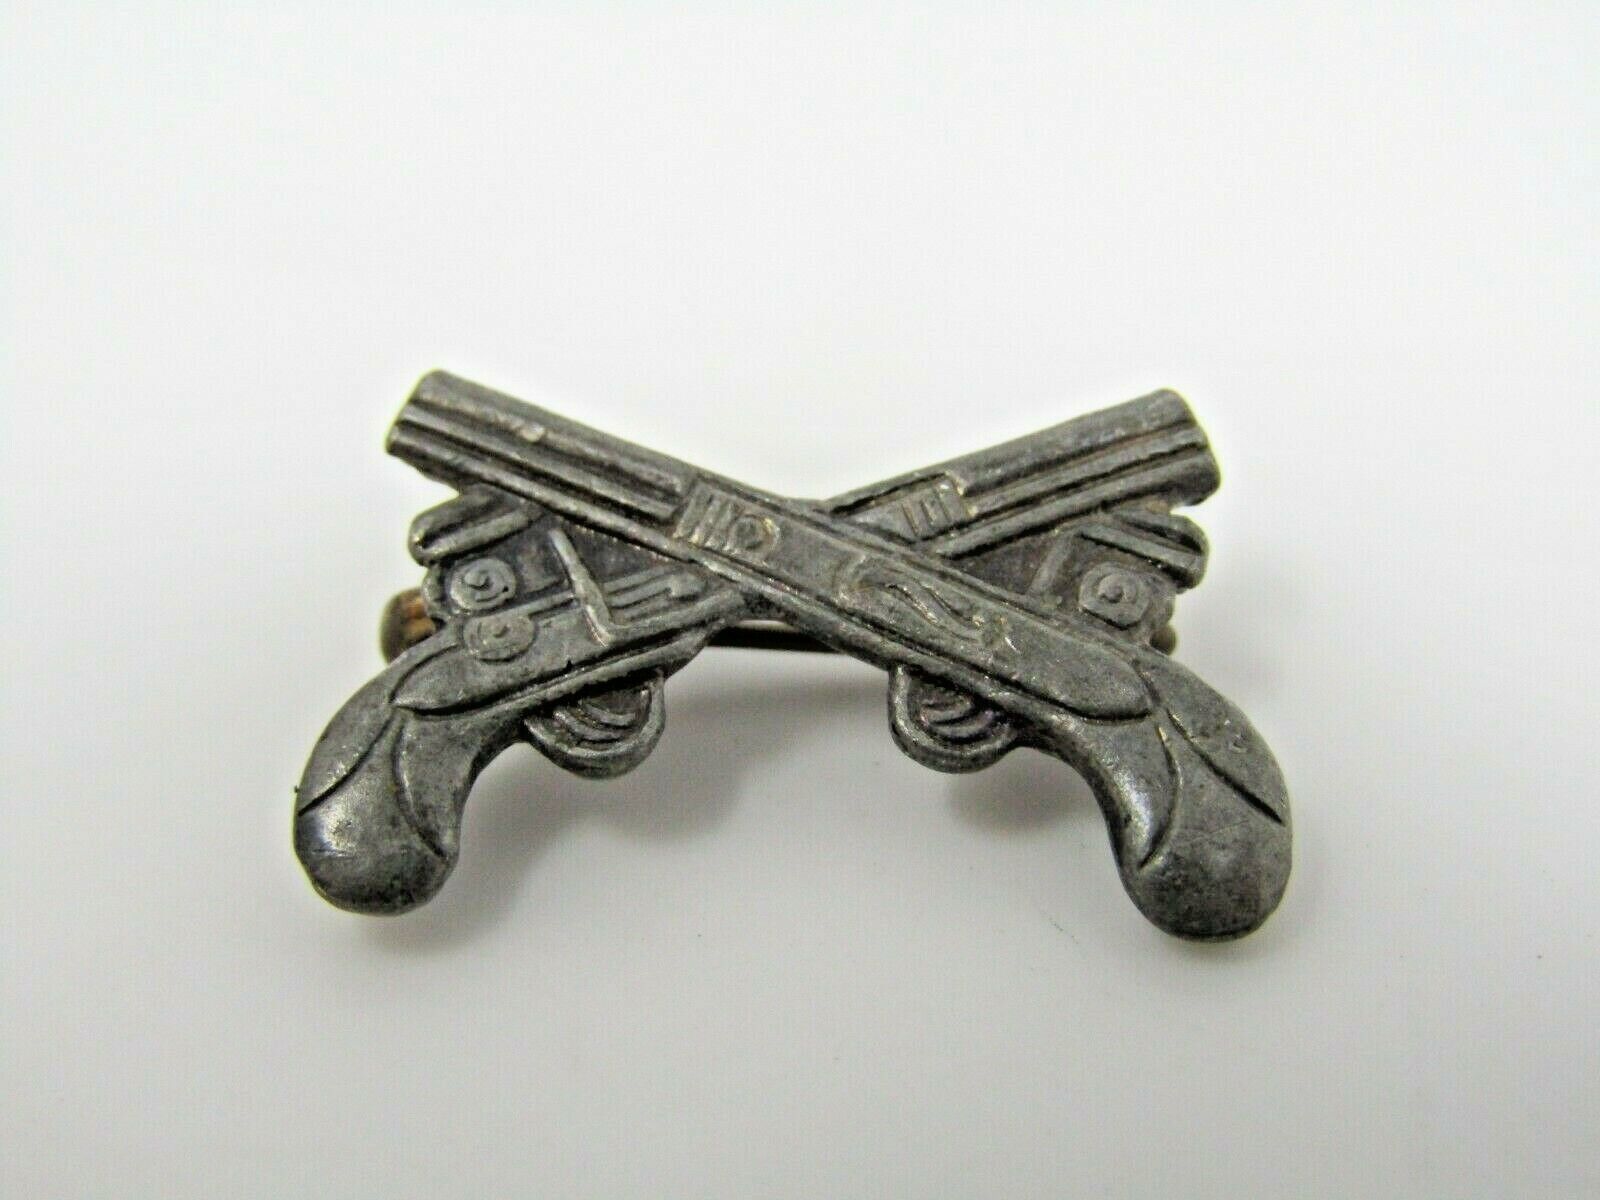 Flintlock Pistols Crossed Over Design Vintage